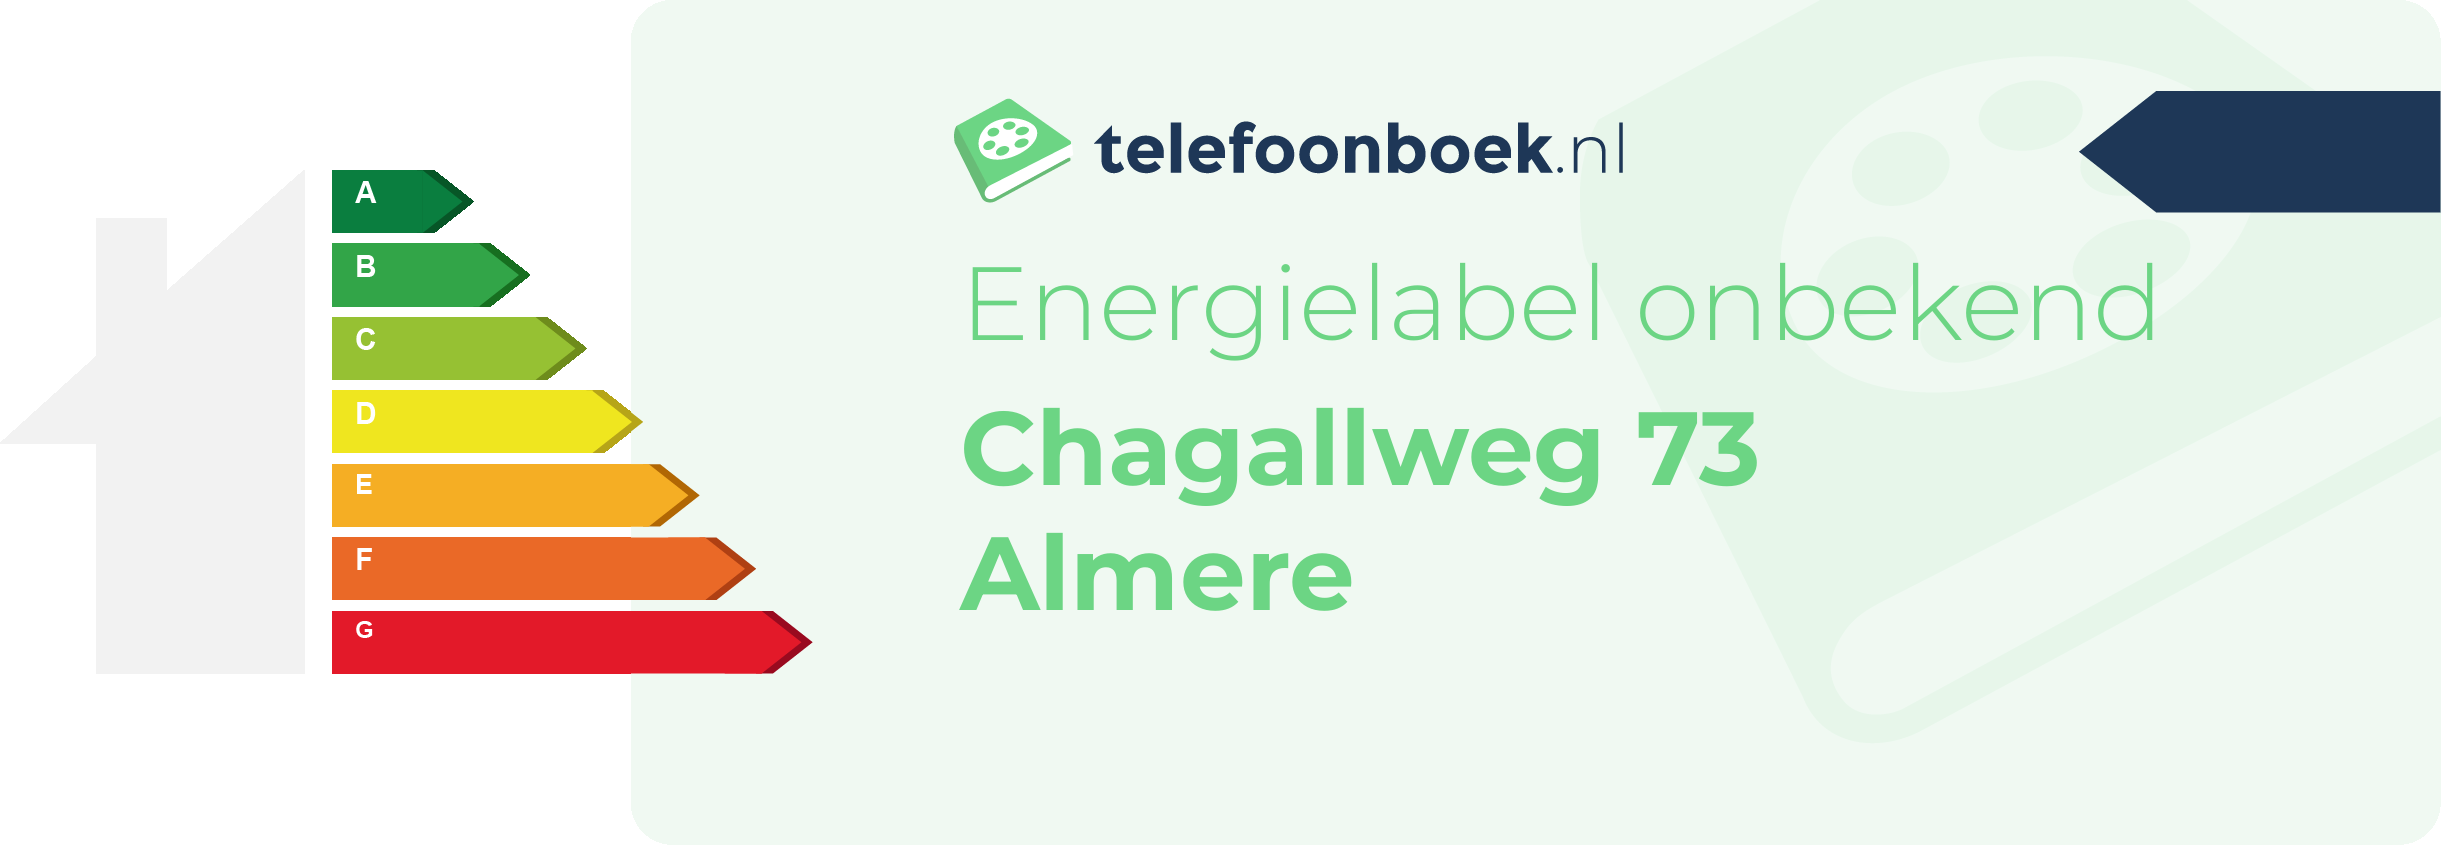 Energielabel Chagallweg 73 Almere